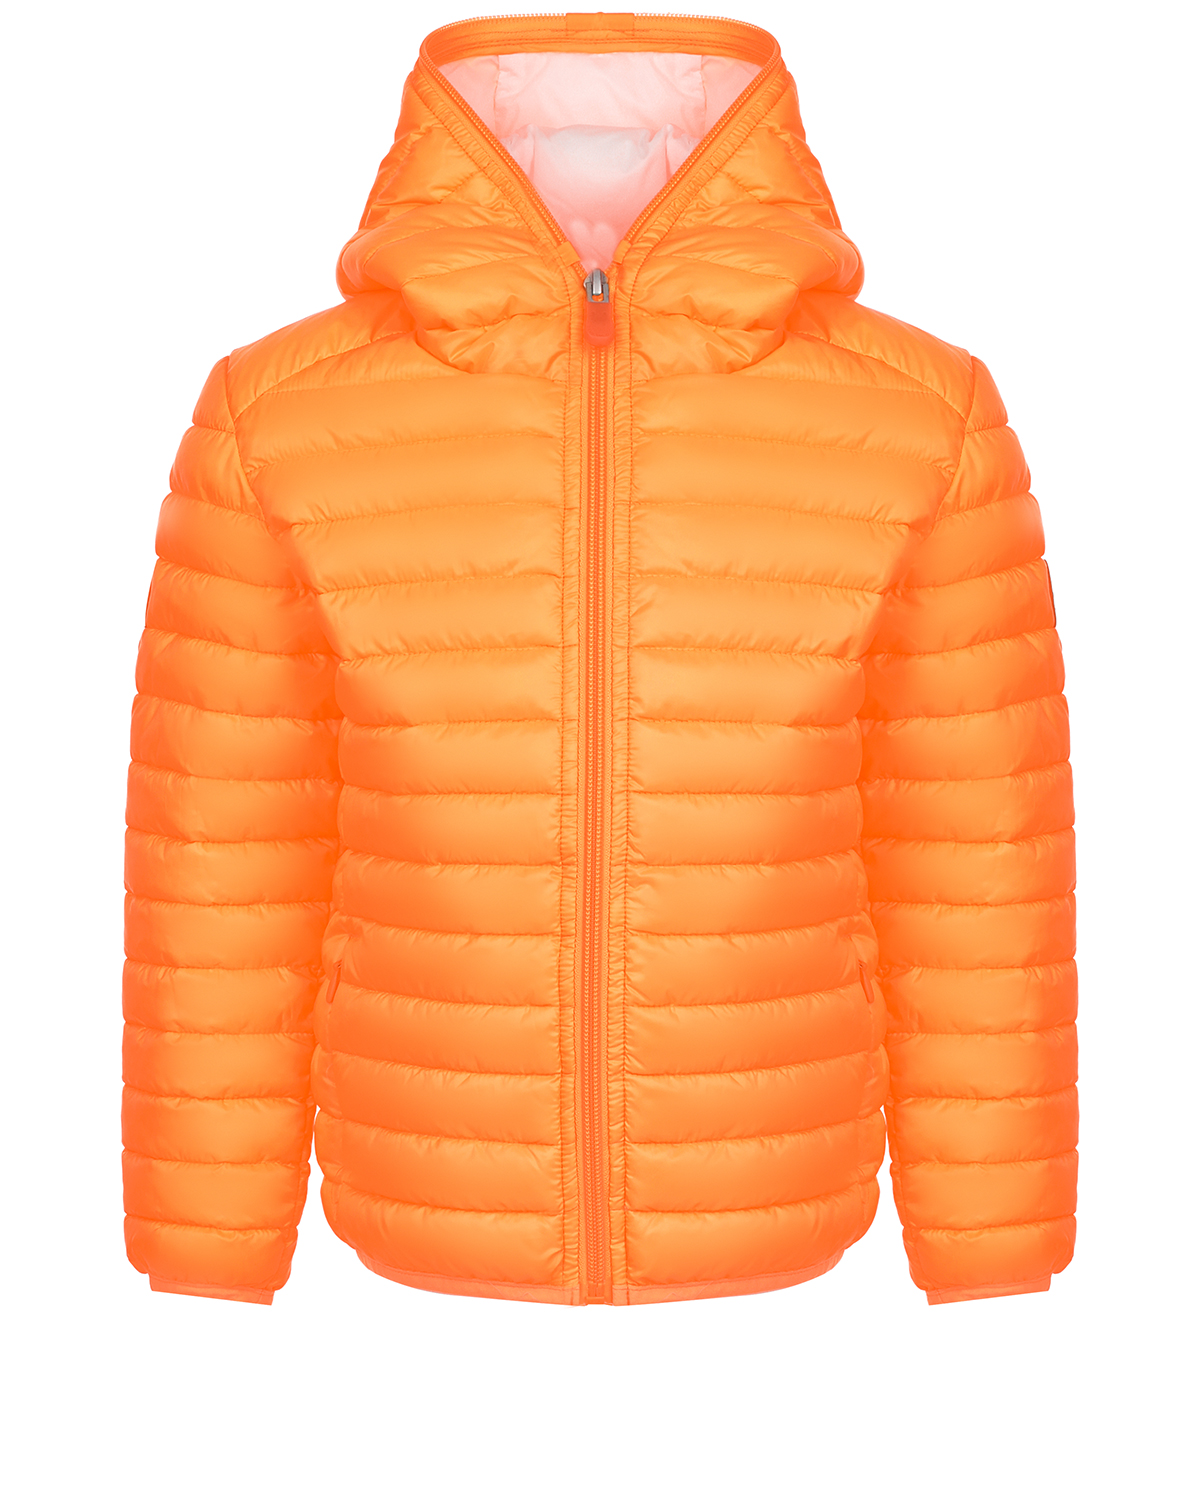 Оранжевая нейлоновая куртка Save the Duck голубое стеганое пальто с капюшоном save the duck детское